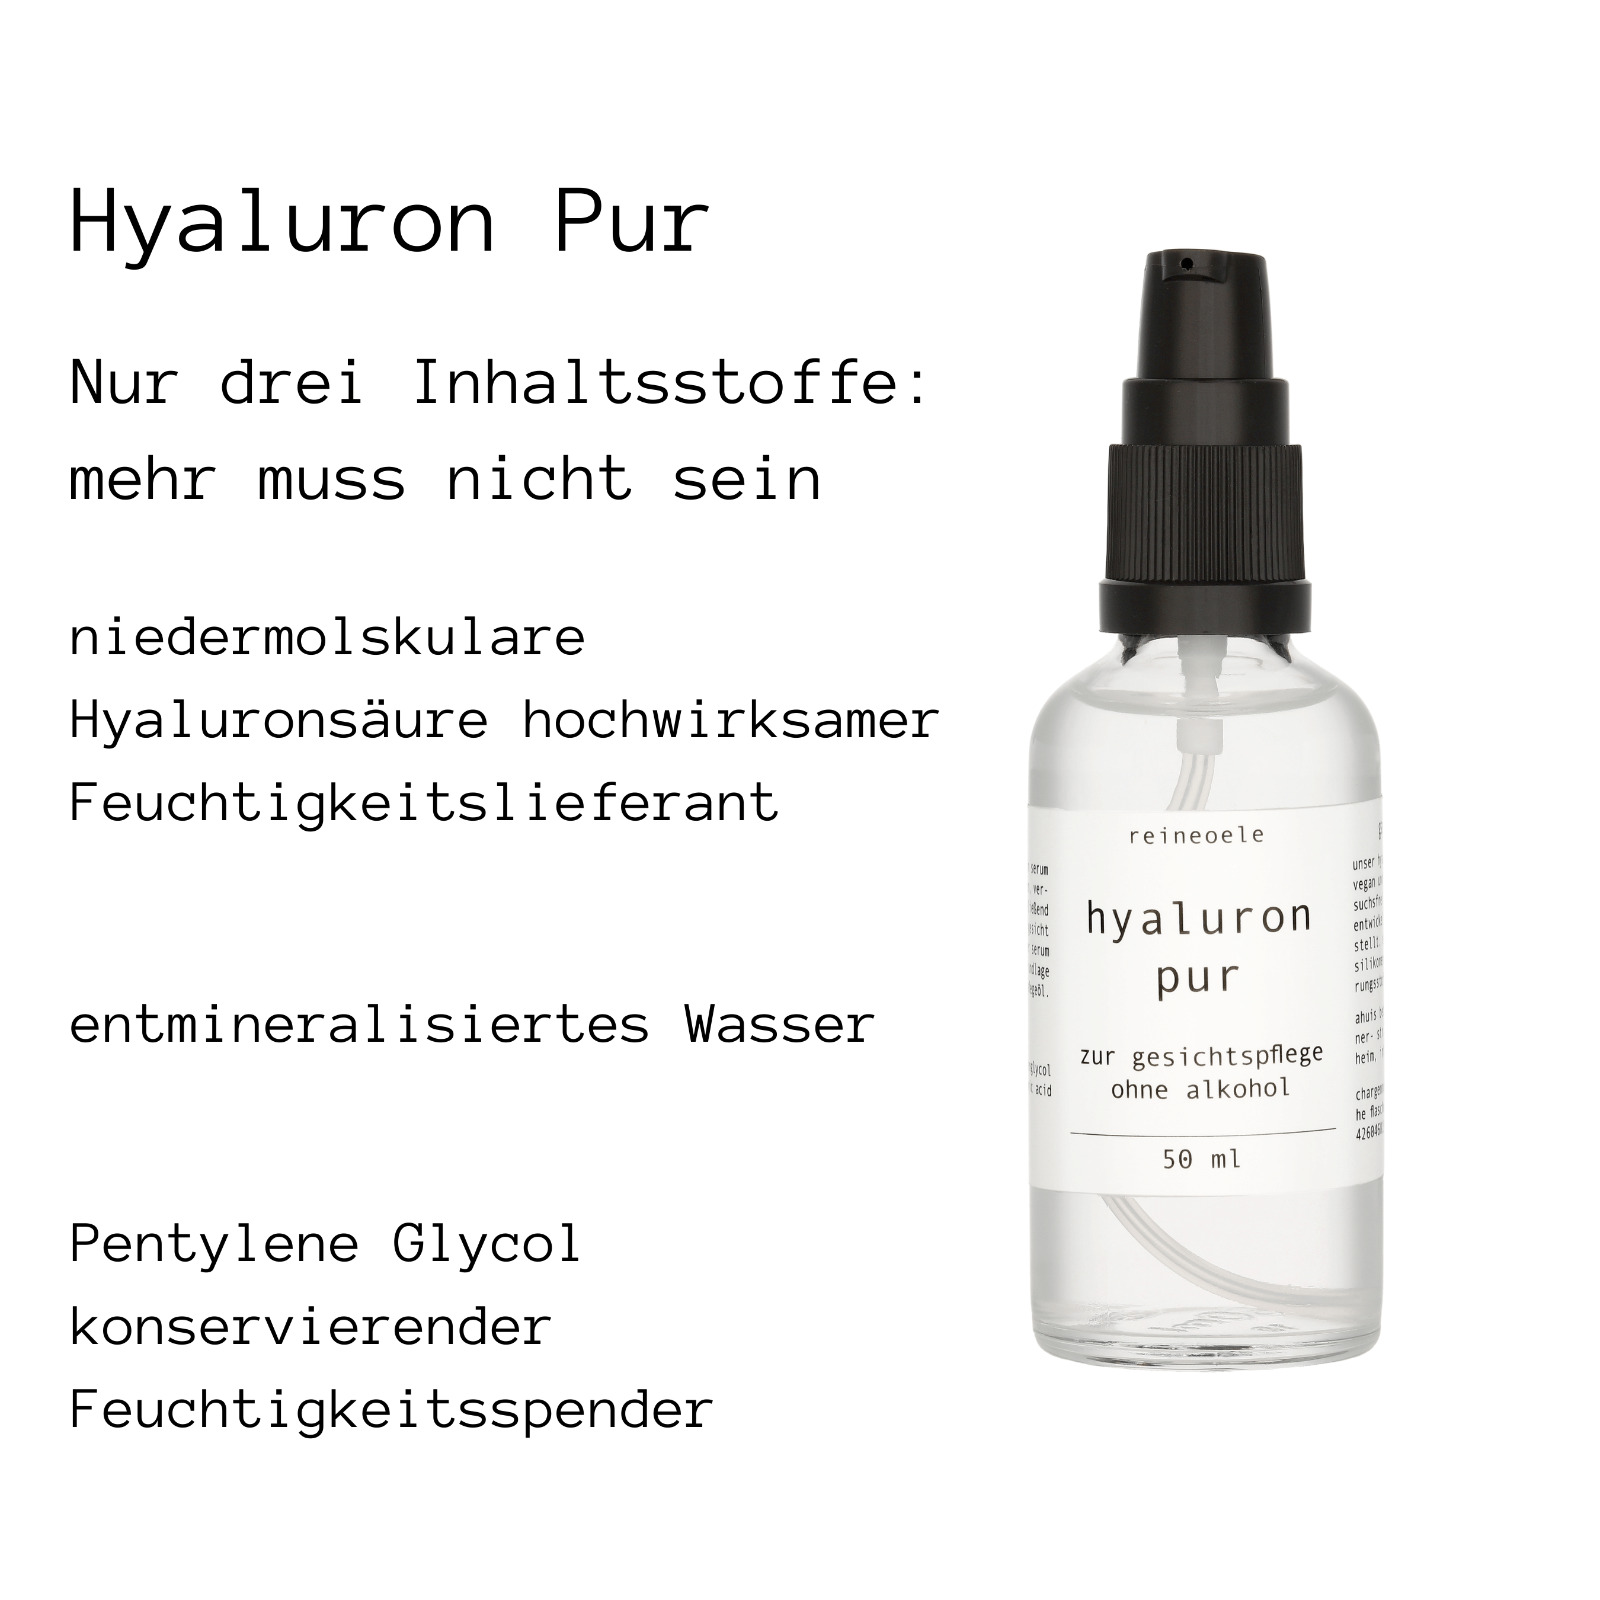 Hyaluron Pur Hyaluronserum ohne Alkohol vegan Dermaroller geeignet hochdosiert